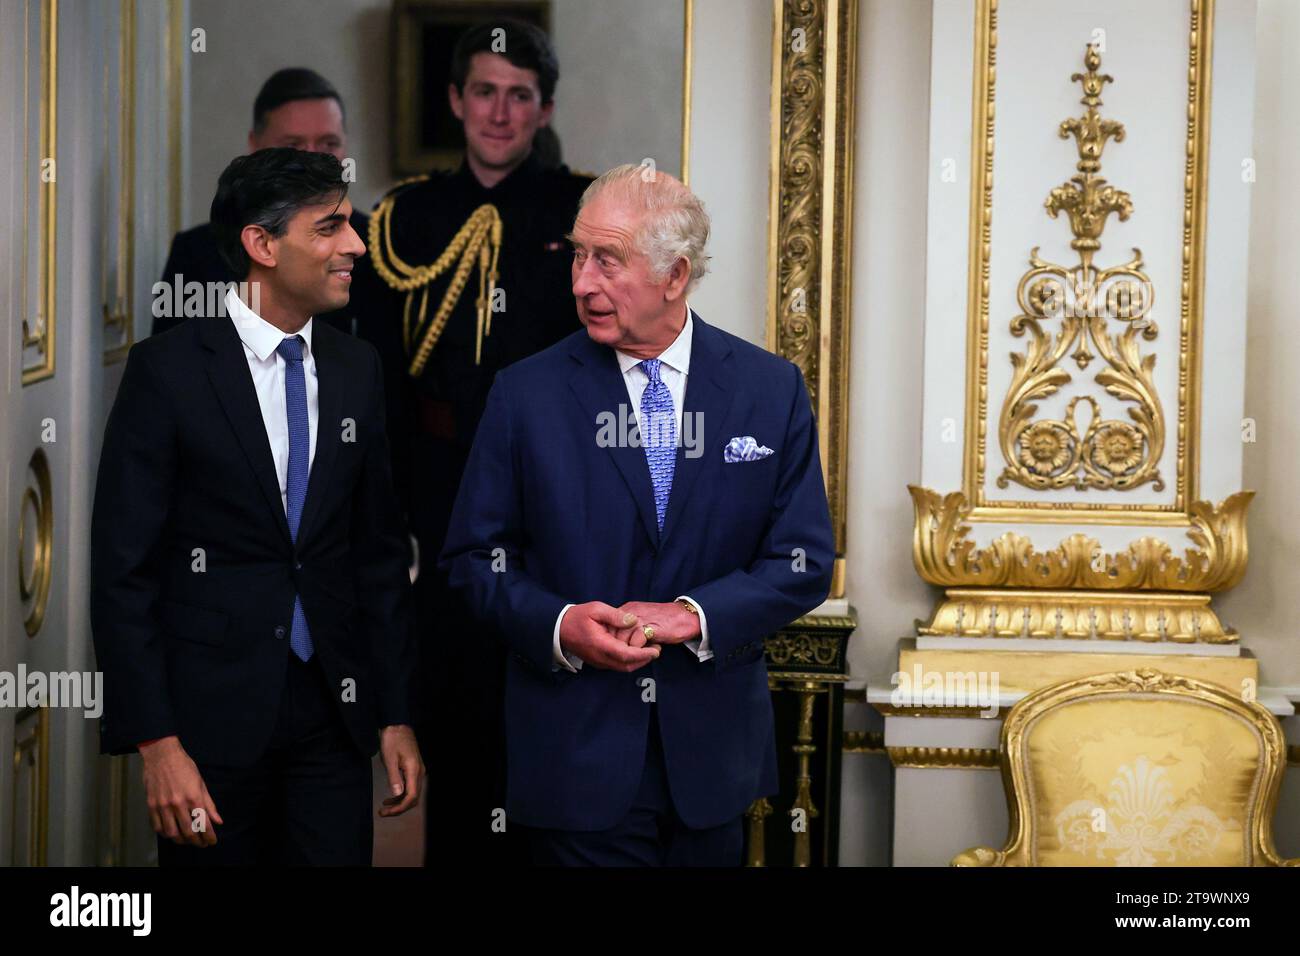 König Karl III. Kommt mit Premierminister Rishi Sunak (links) zu einem Empfang im Londoner Buckingham Palace anlässlich des Global Investment Summit 2023. Bilddatum: Montag, 27. November 2023. Stockfoto